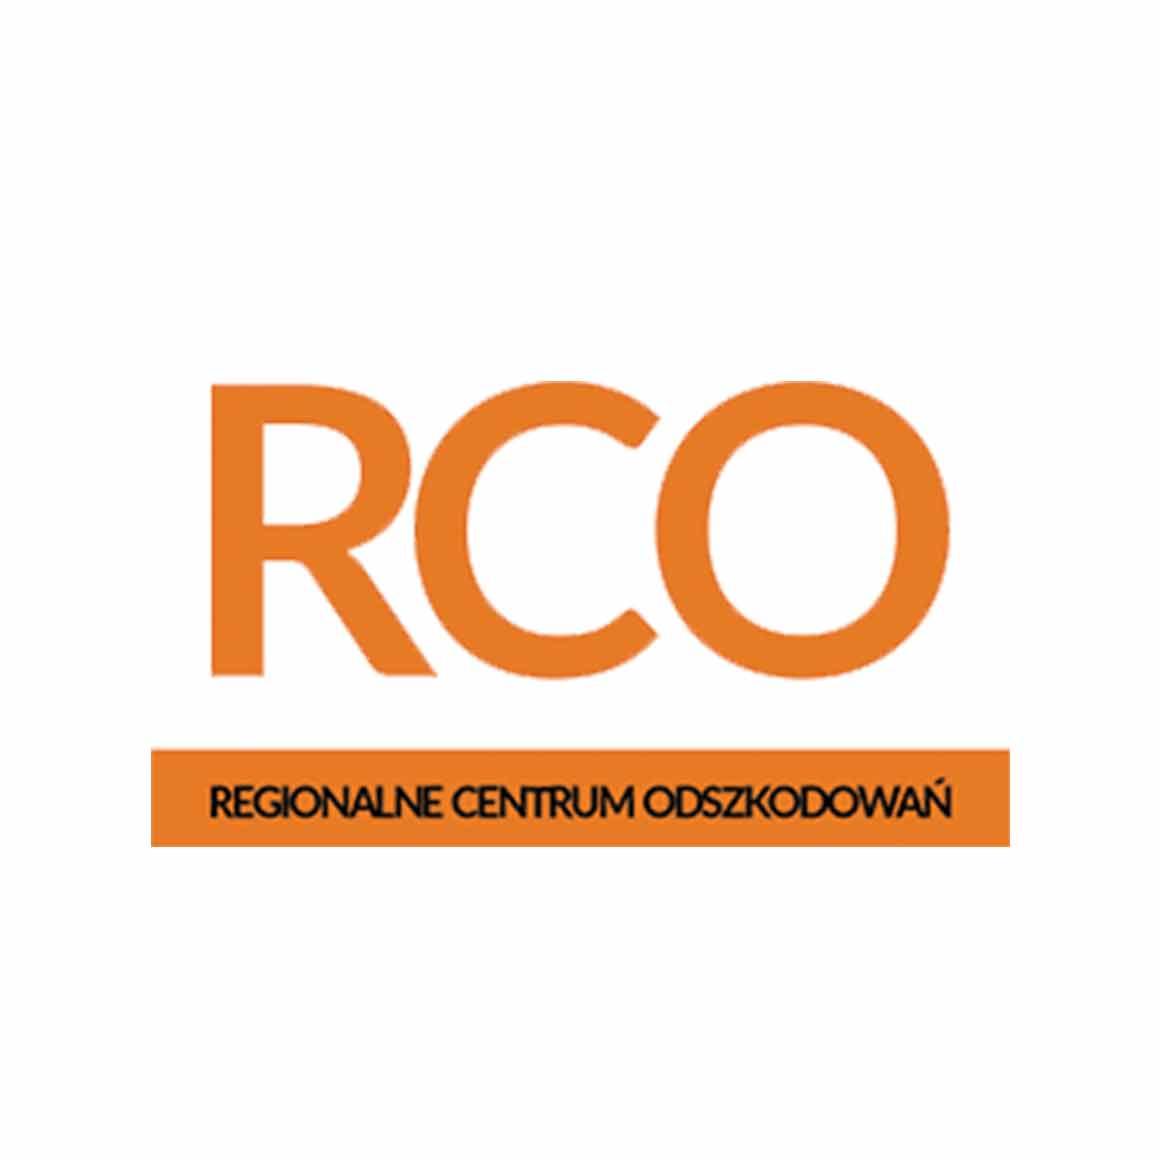 RCO (Regionalne Centrum Odszkodowań Sylwester Stasiak)